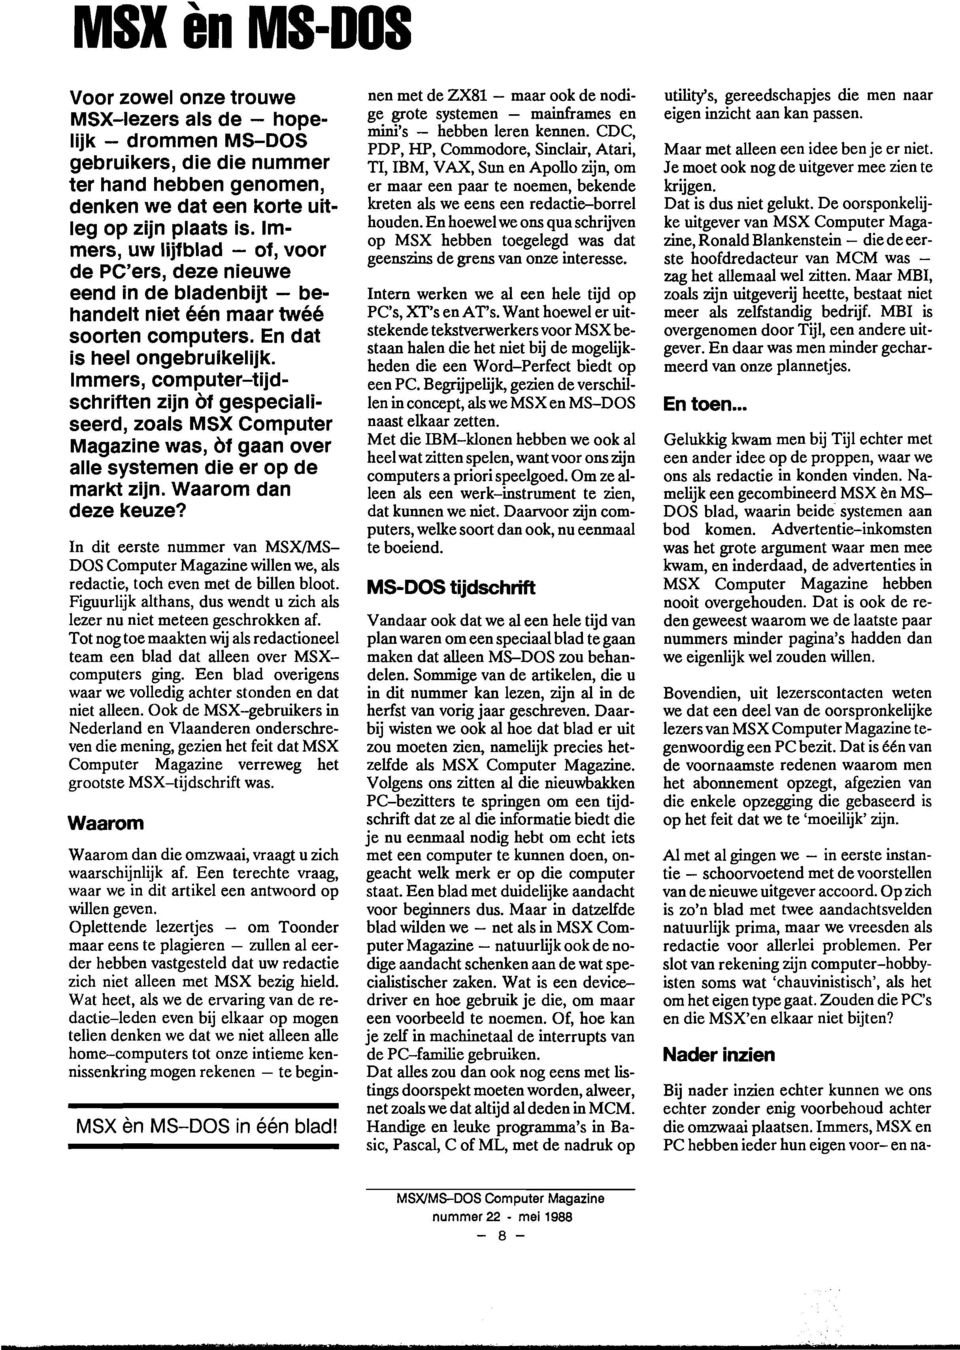 Immers, computer-tijdschriften zijn of gespecialiseerd, zoals MSX Computer Magazine was, of gaan over alle systemen die er op de markt zijn. Waarom dan deze keuze?